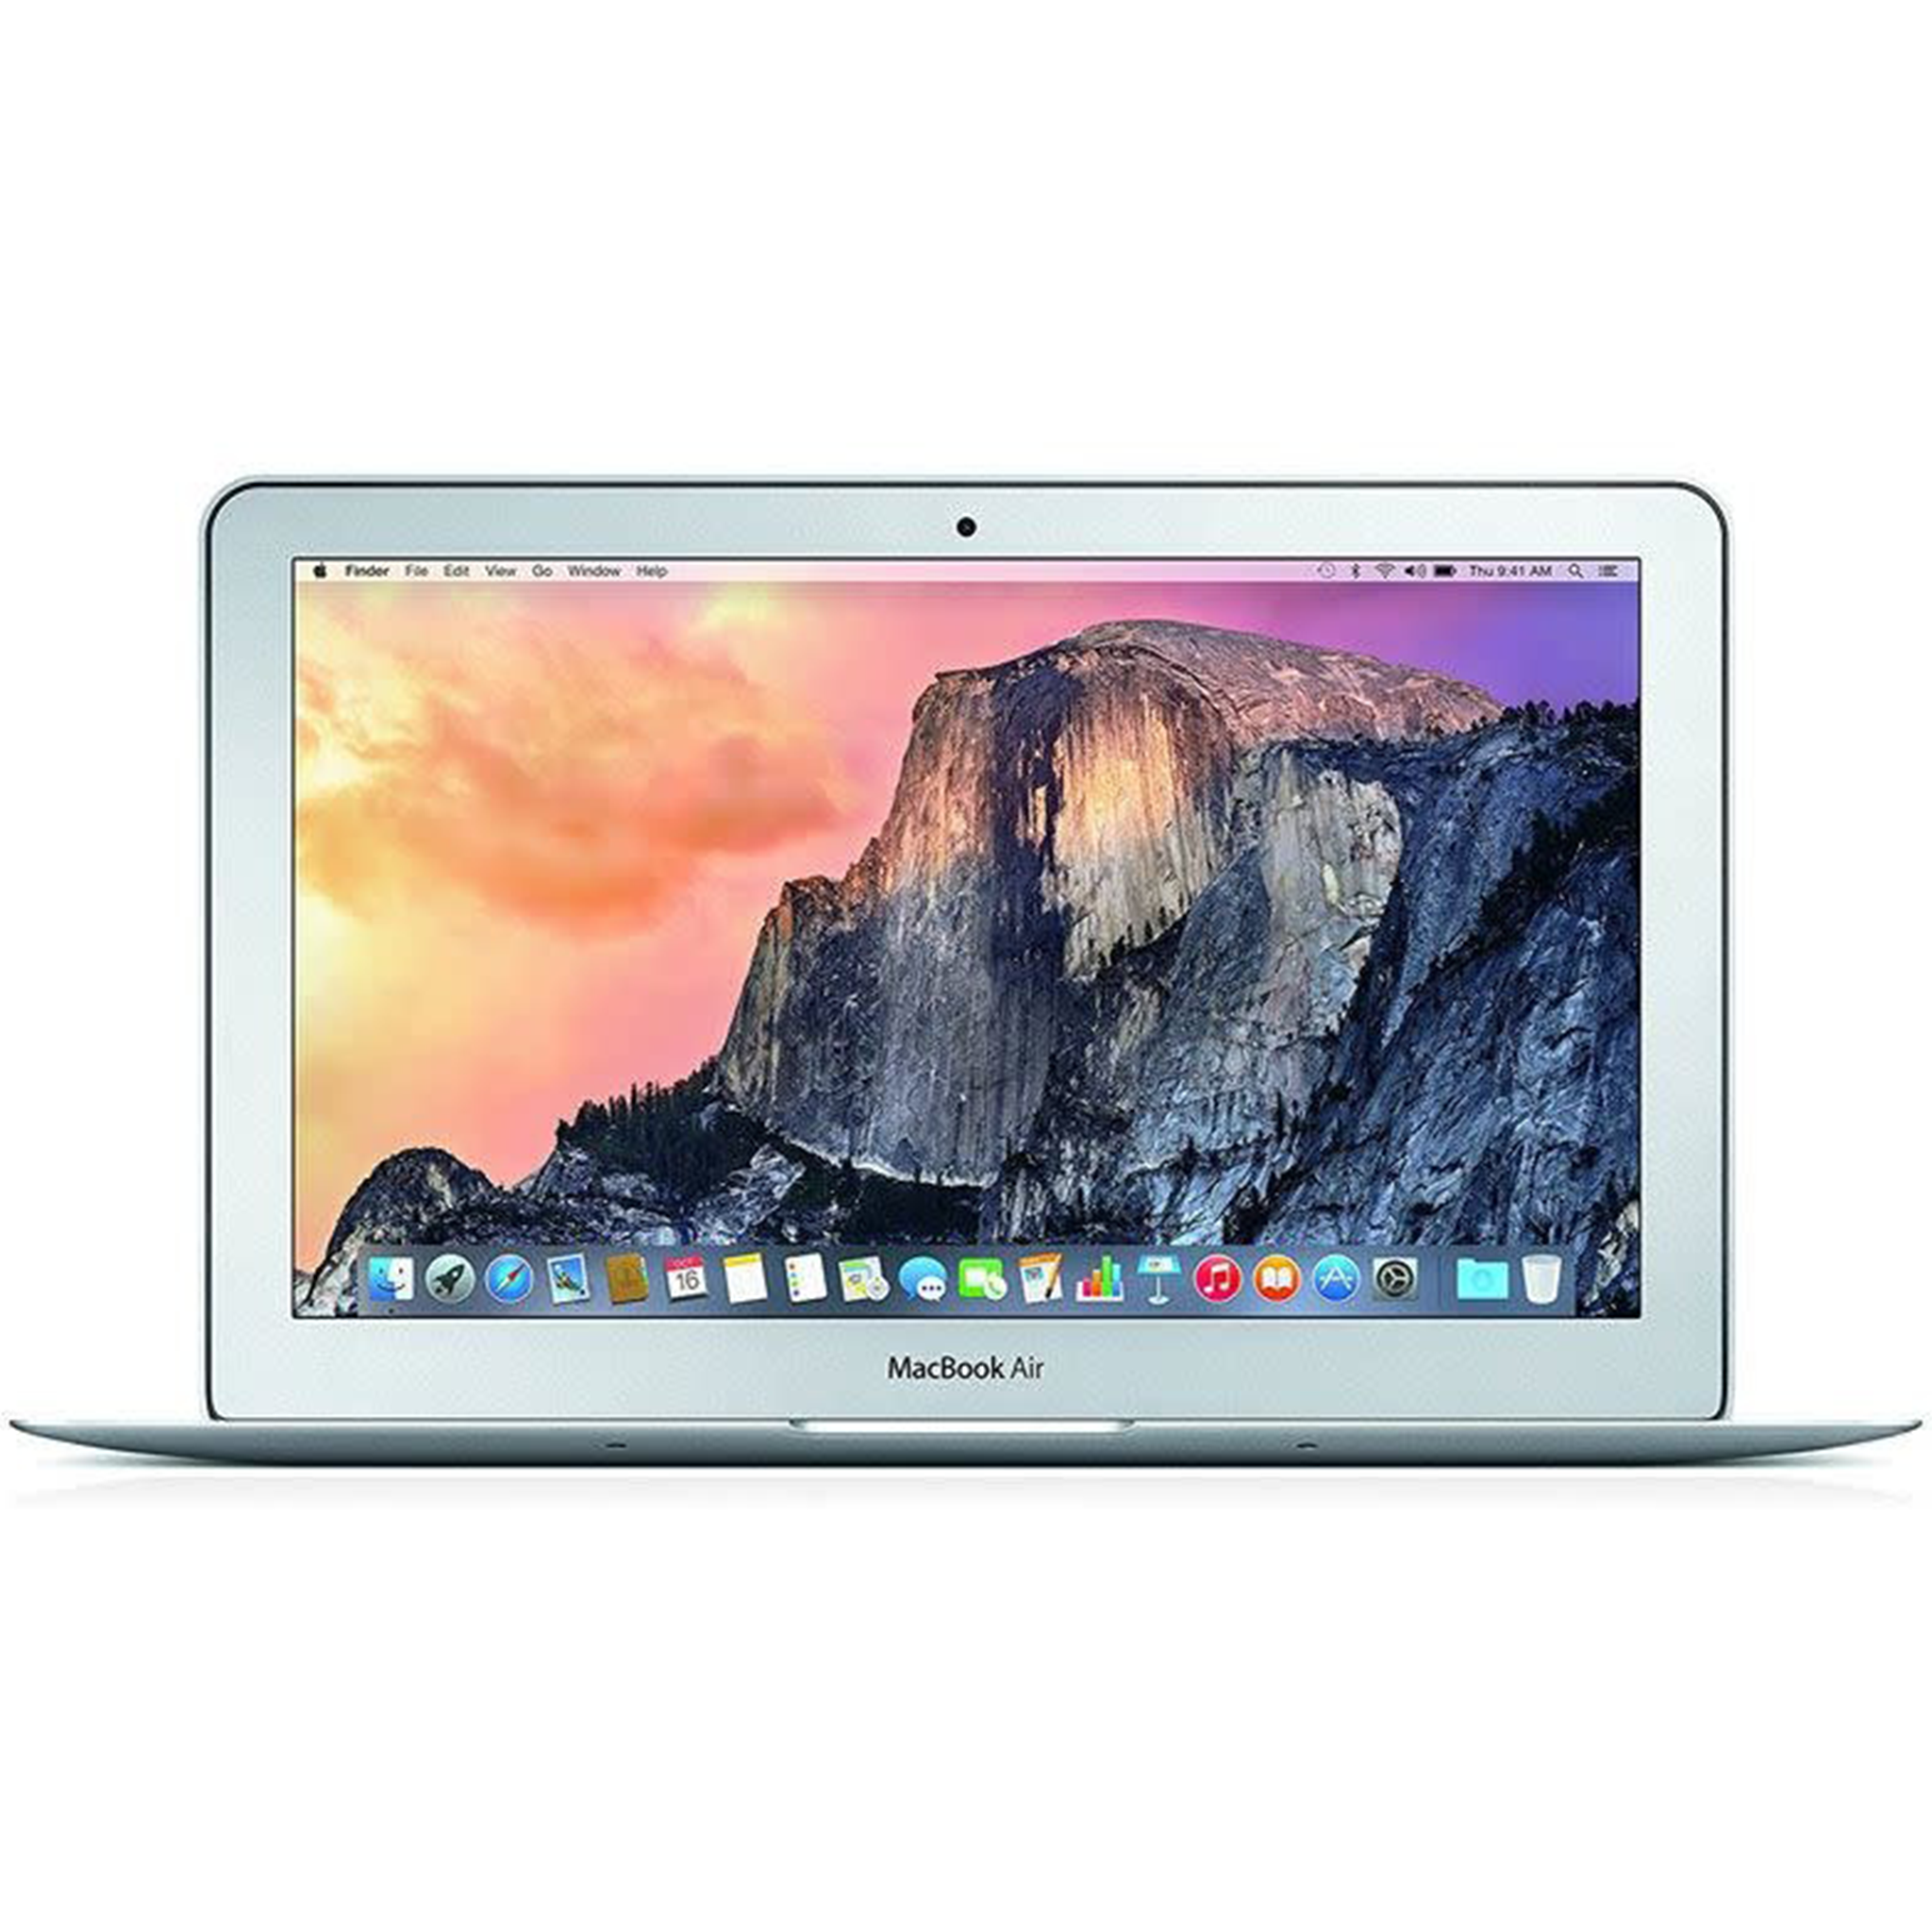 macbook 11 inch i7